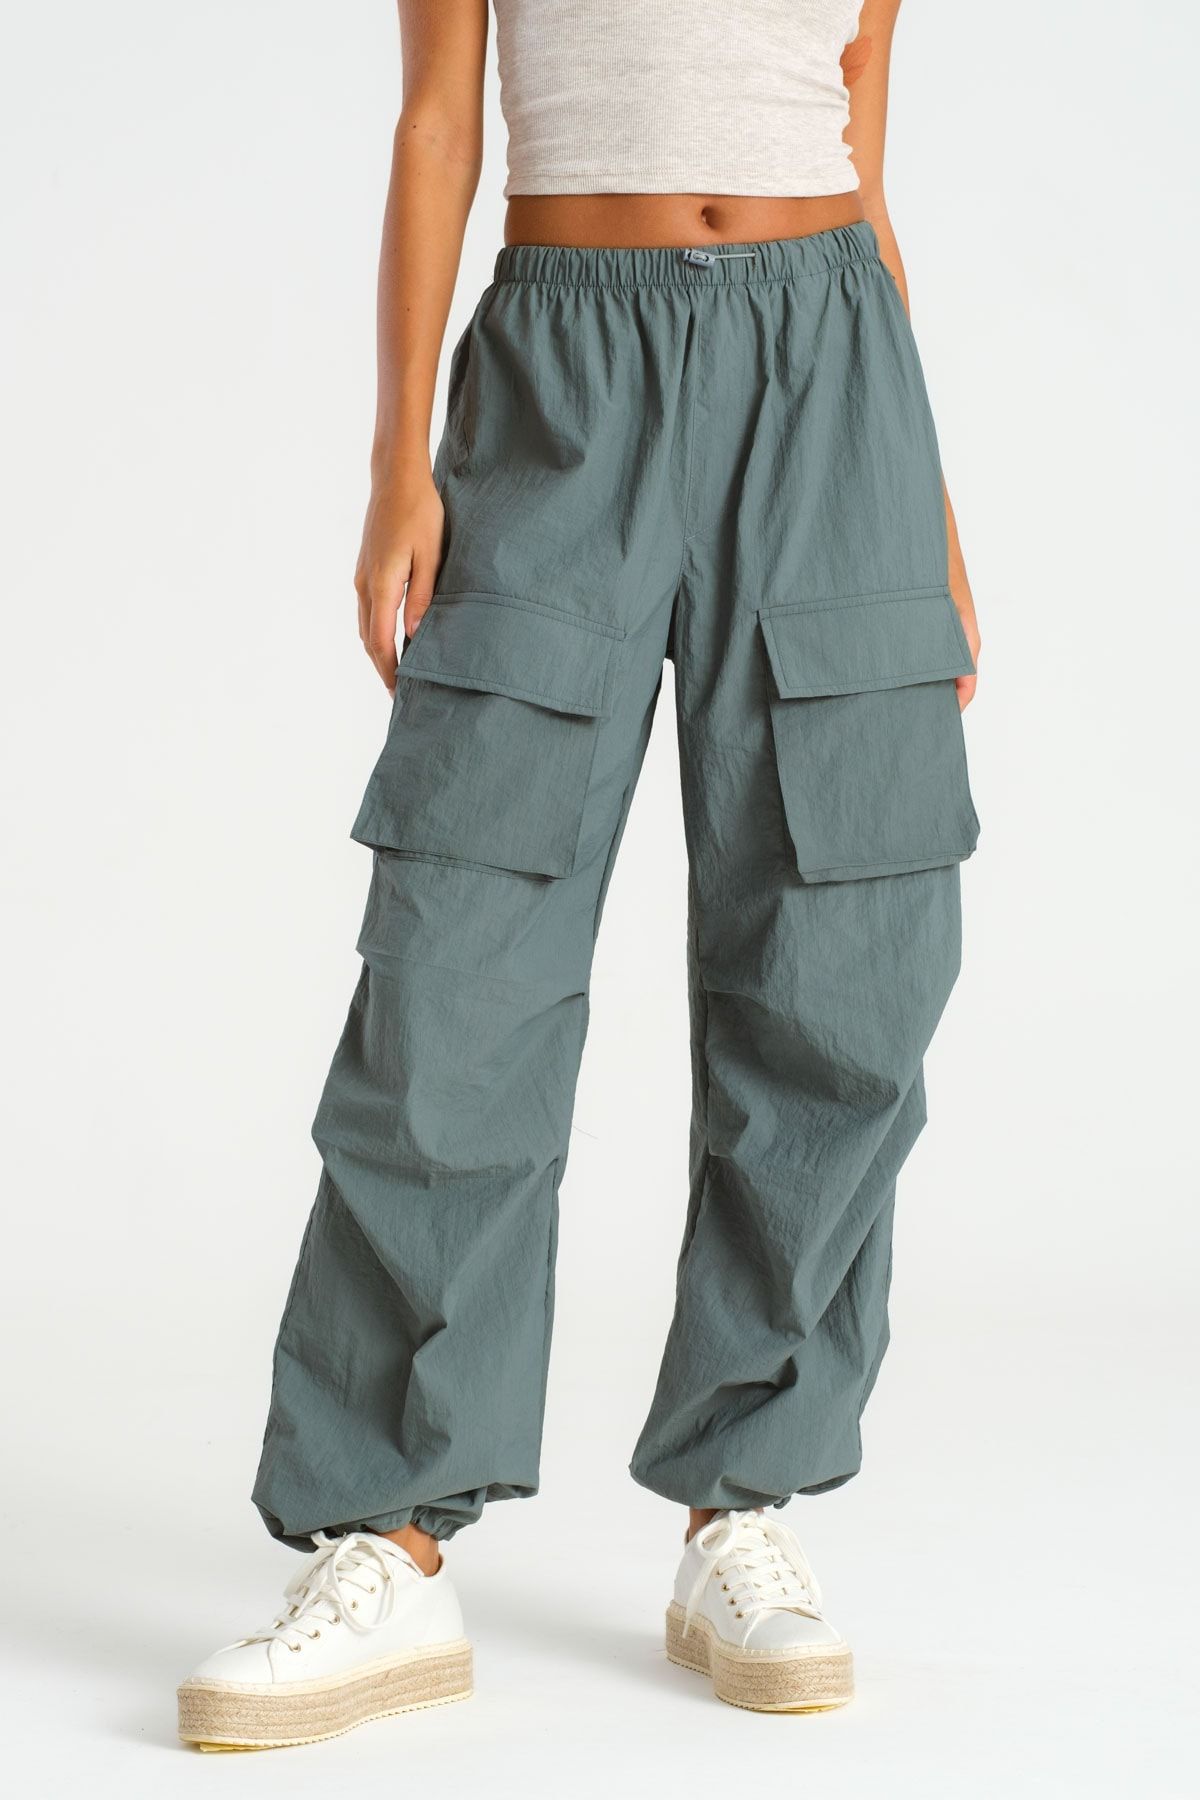 its basic Kadın Su Yeşili Paraşüt Kumaş Kargo Cep Jogger Pantolon